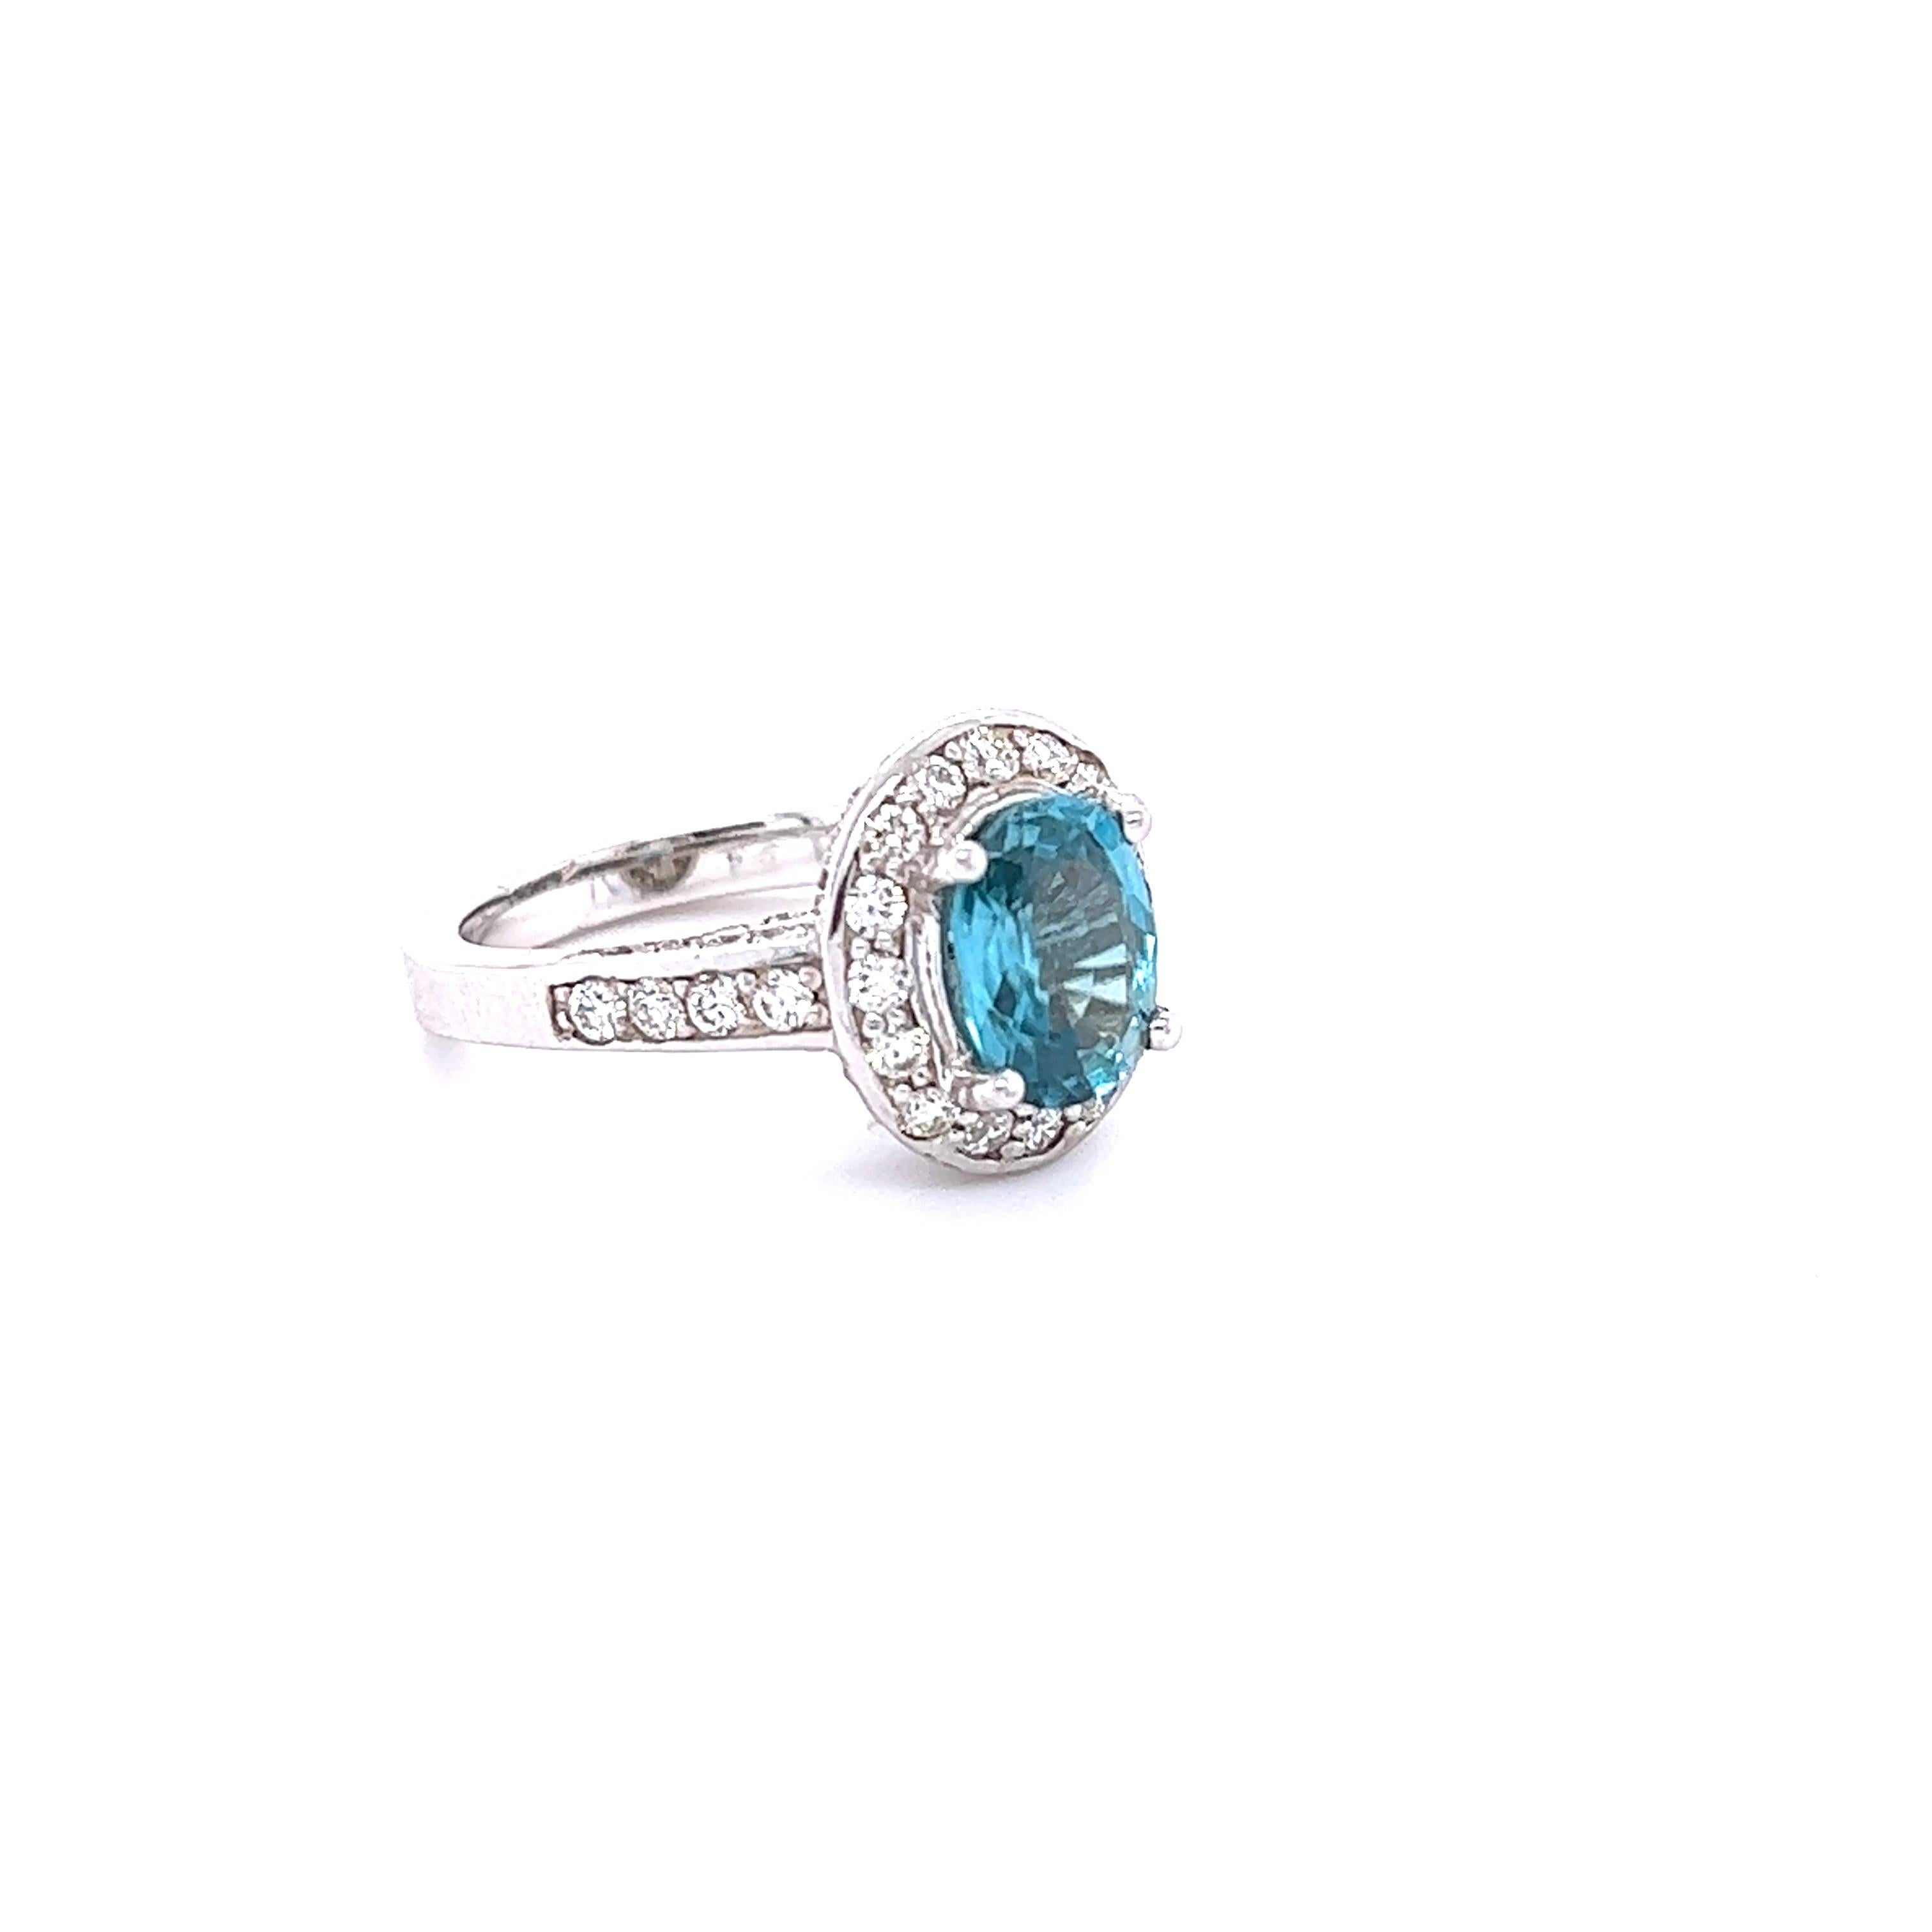 Une magnifique bague en zircon bleu et diamant qui peut être une belle bague de fiançailles ou simplement une bague de tous les jours !
Le zircon bleu est une pierre naturelle extraite principalement au Sri Lanka, au Myanmar et en Australie.  
Cette